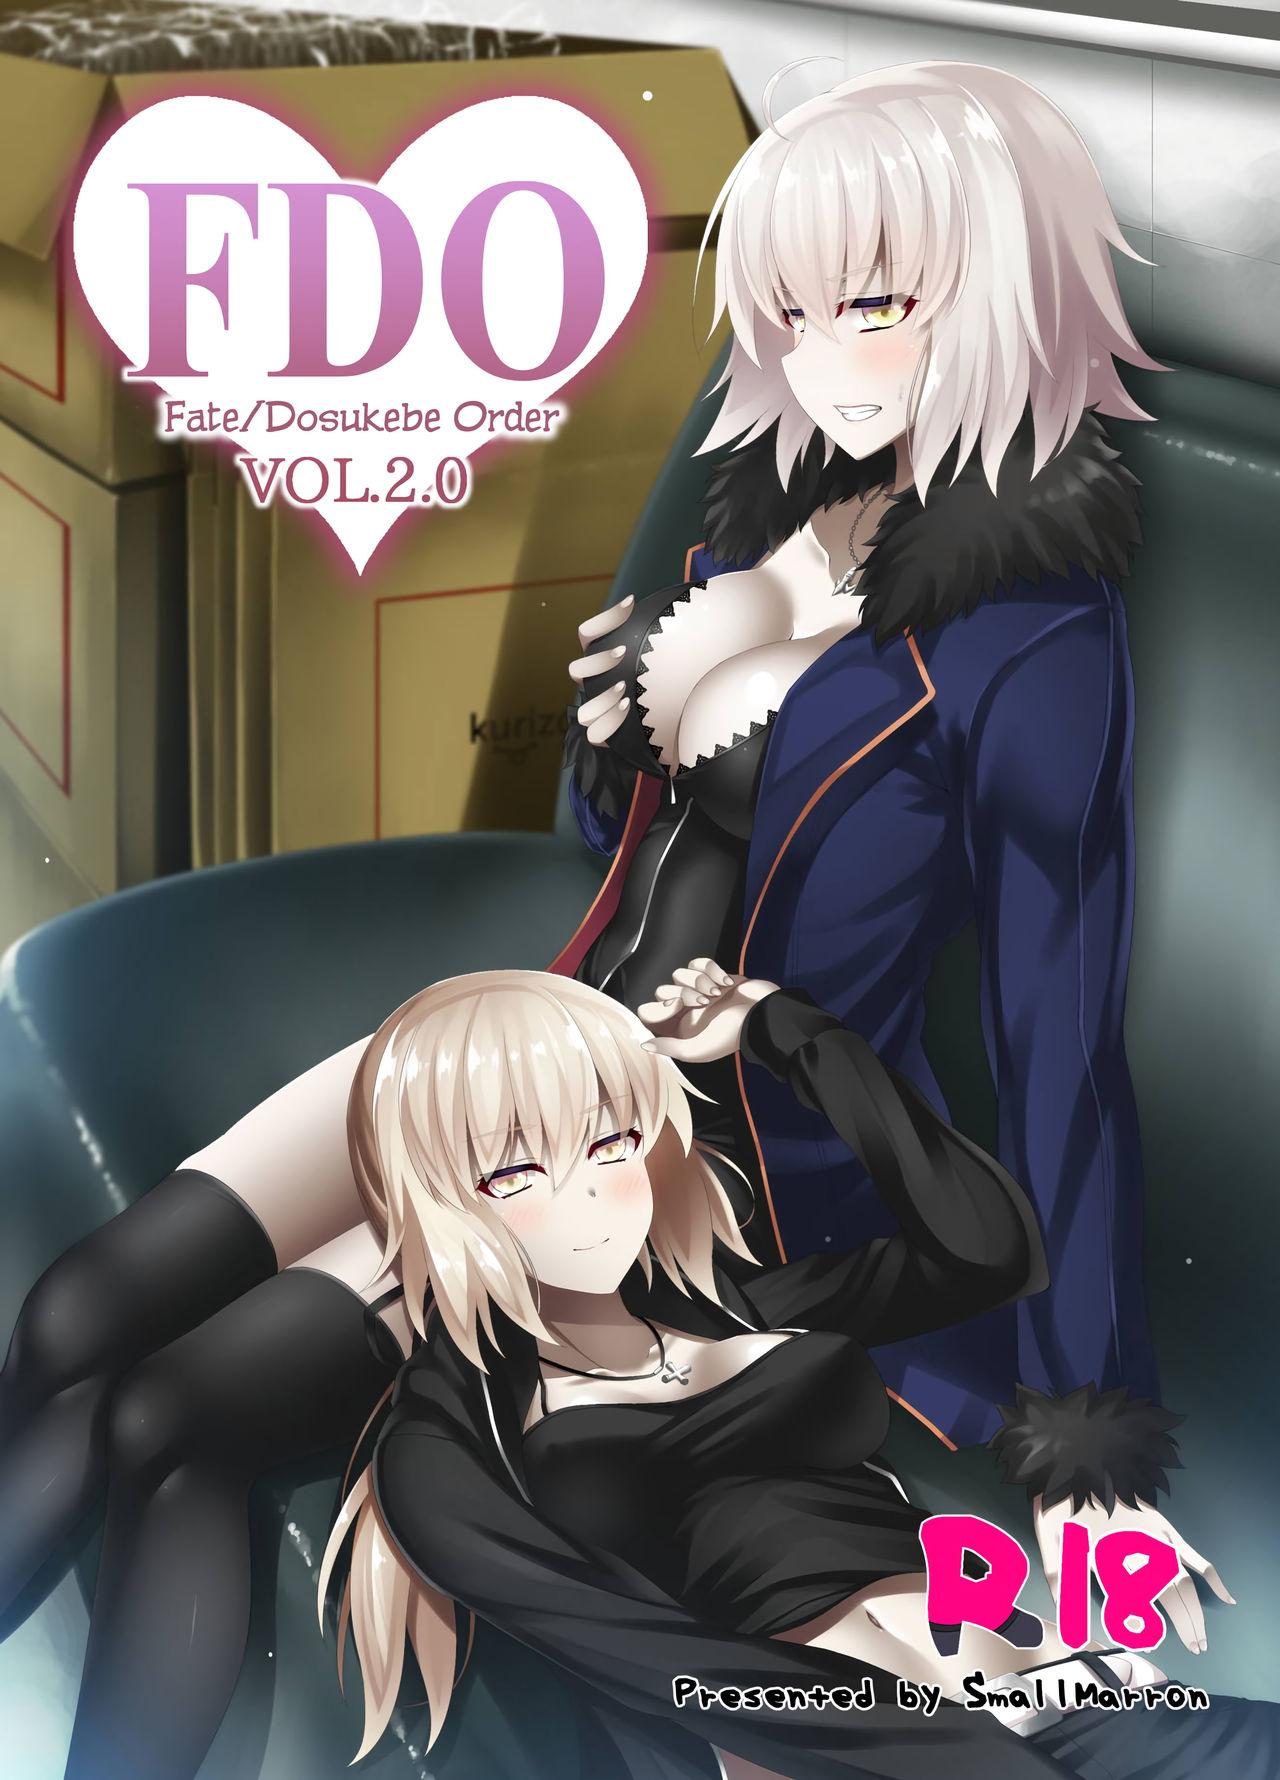 Exgirlfriend FDO Fate/Dosukebe Order VOL.2.0 - Fate grand order Gay Clinic - Picture 1